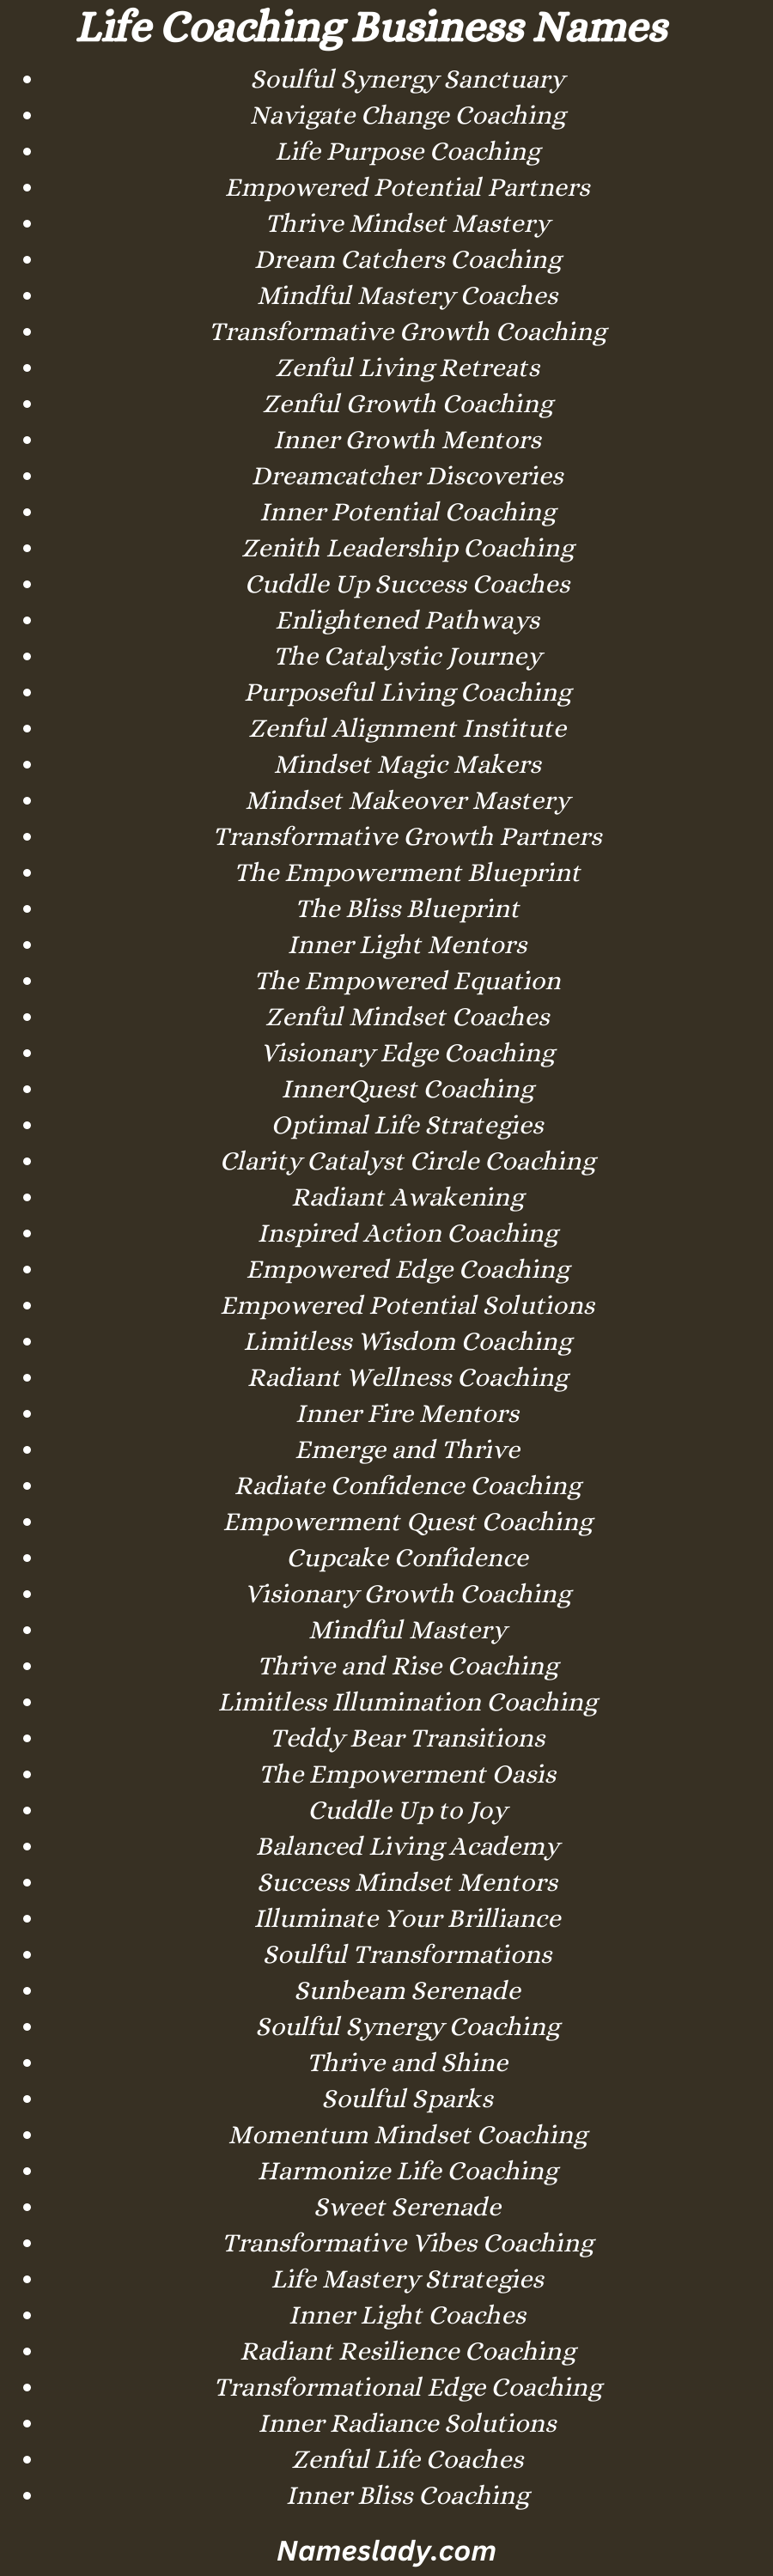 Life Coaching Business Names